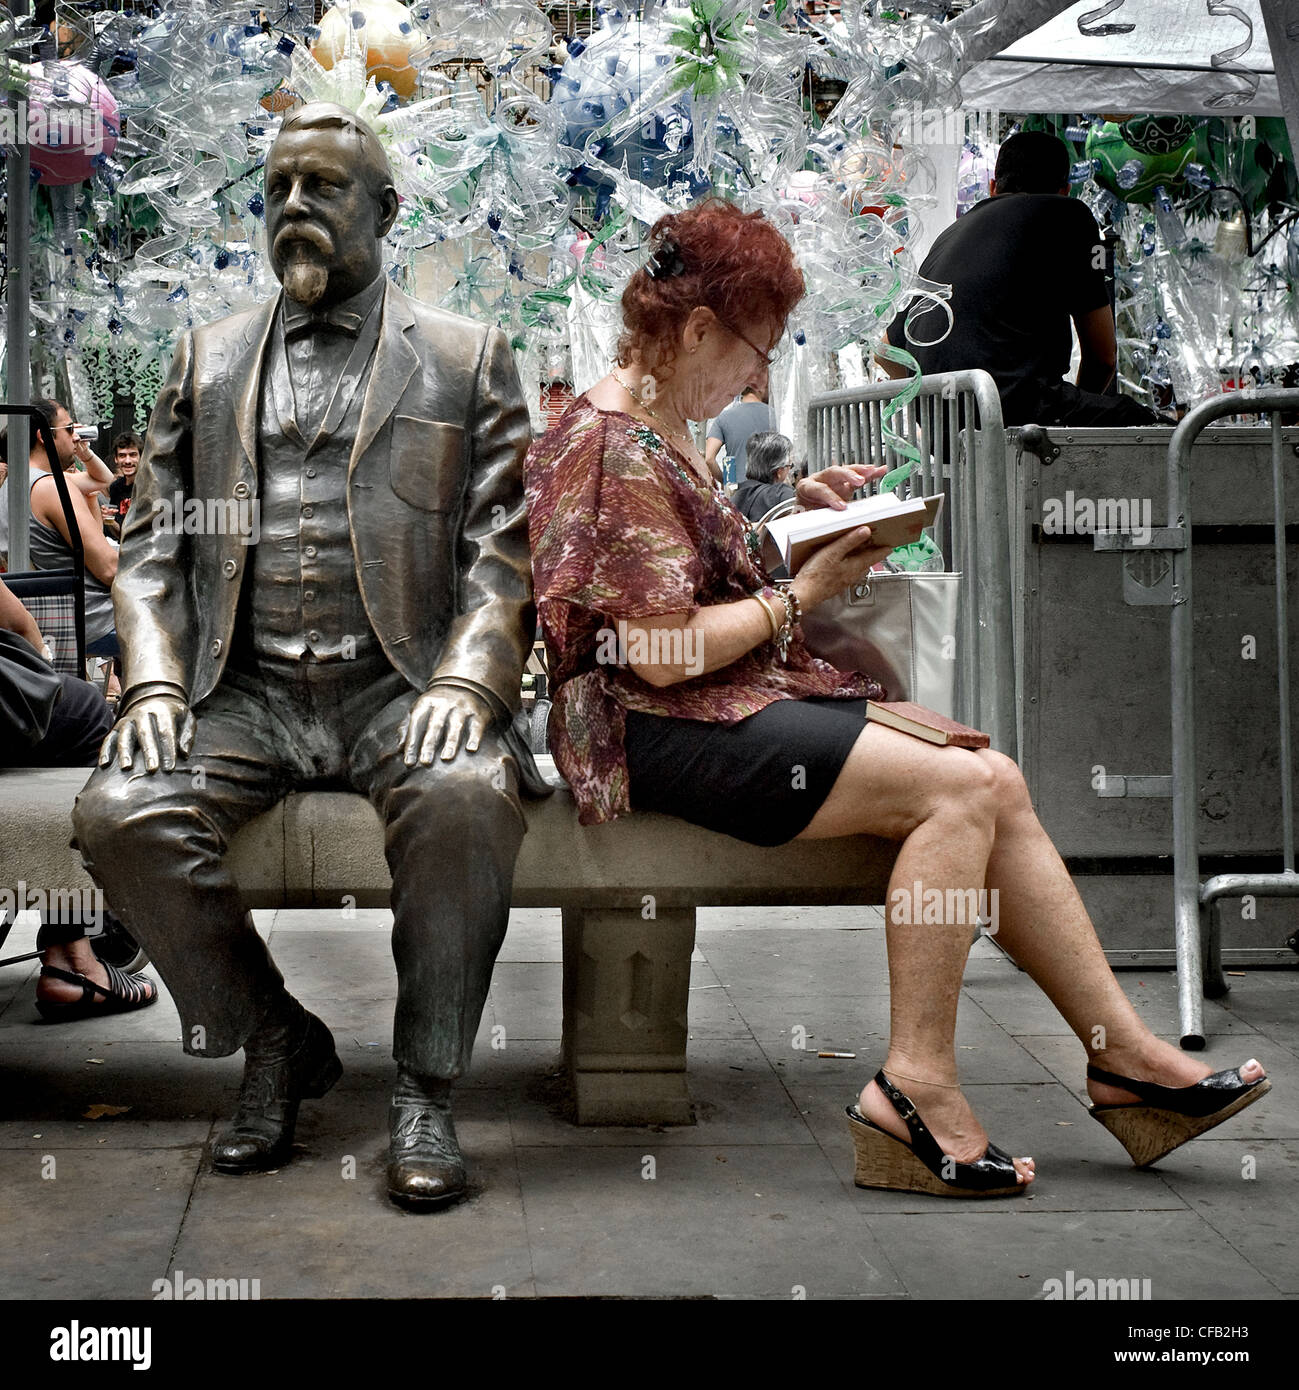 Femme lisant un livre à côté de la statue de Rovira i Trias, un architecte catalan, dans le quartier de Gracia à Barcelone. Banque D'Images